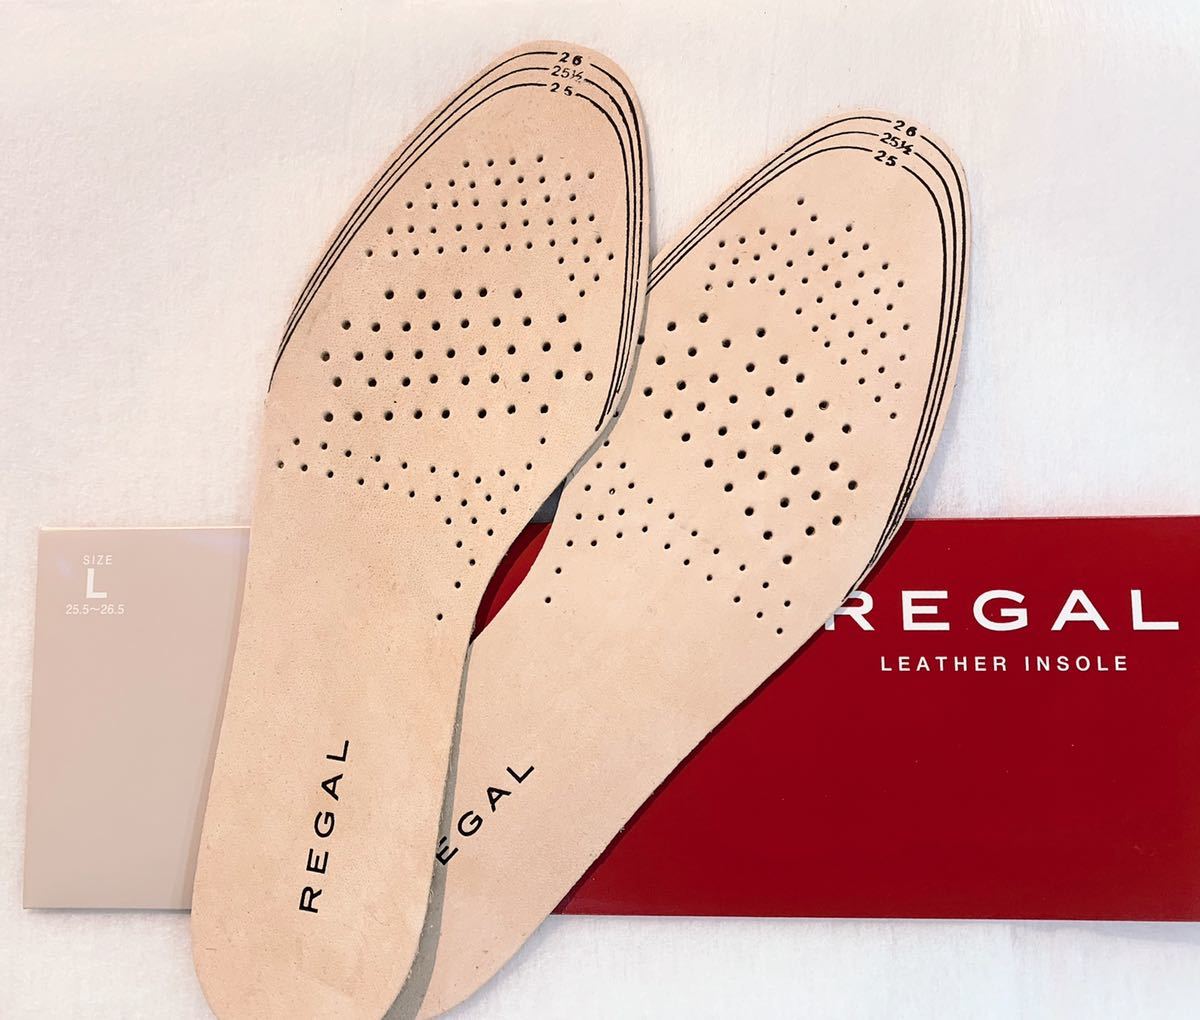  новый товар оригинал стелька джентльмен обувь для Reagal TY01 [.... .. кожа ] REGAL средний кровать подошва 1 пара минут ( левый правый минут ) кожа кожа L размер телячья кожа LEATHER INSOLE